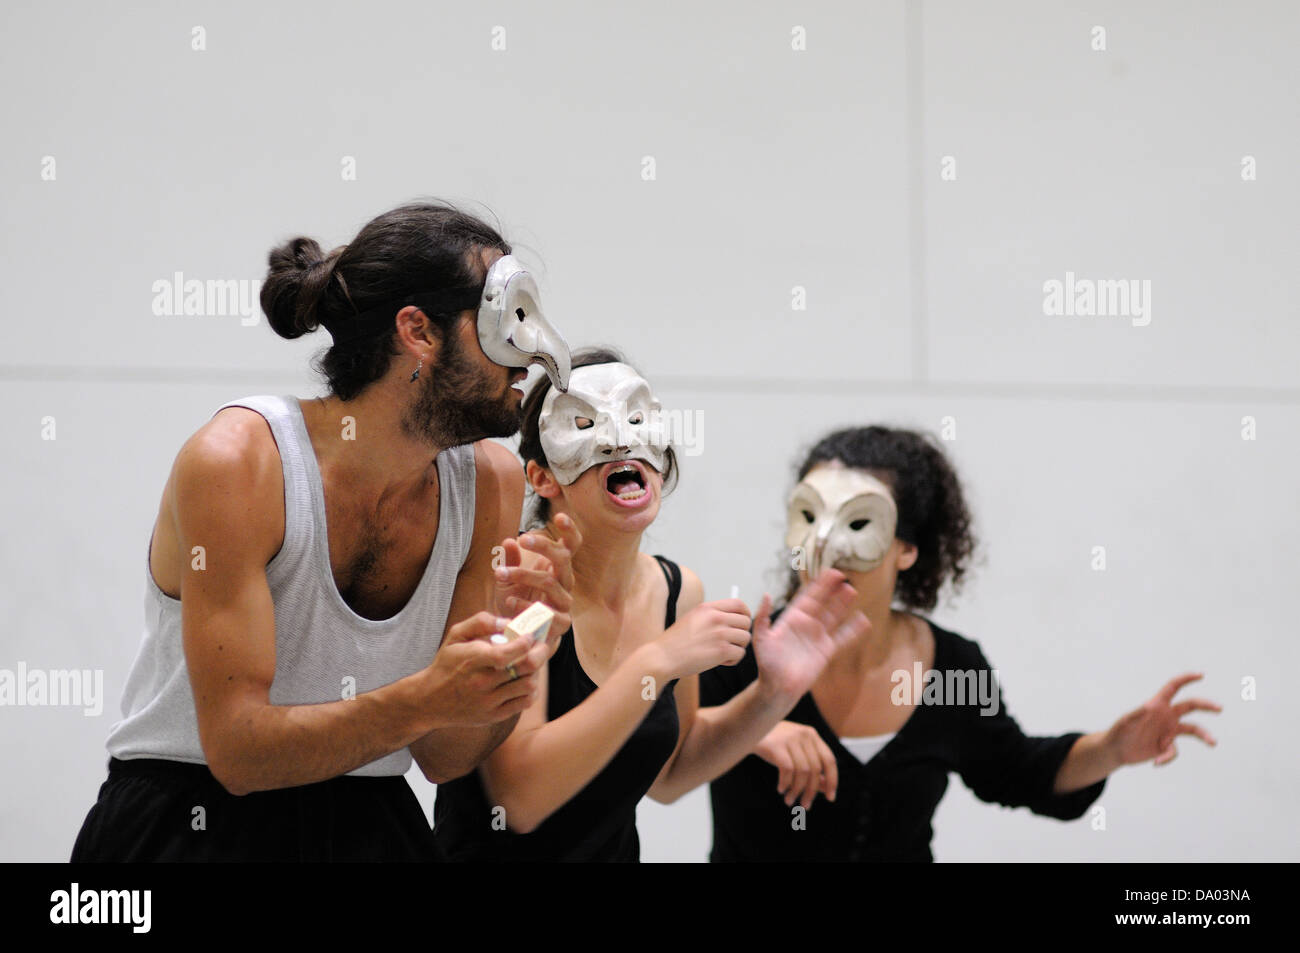 Barcellona - MAR 3: Attori con gioco le maschere della Commedia dell'arte il 3 marzo 2011 a Barcellona, Spagna. Foto Stock